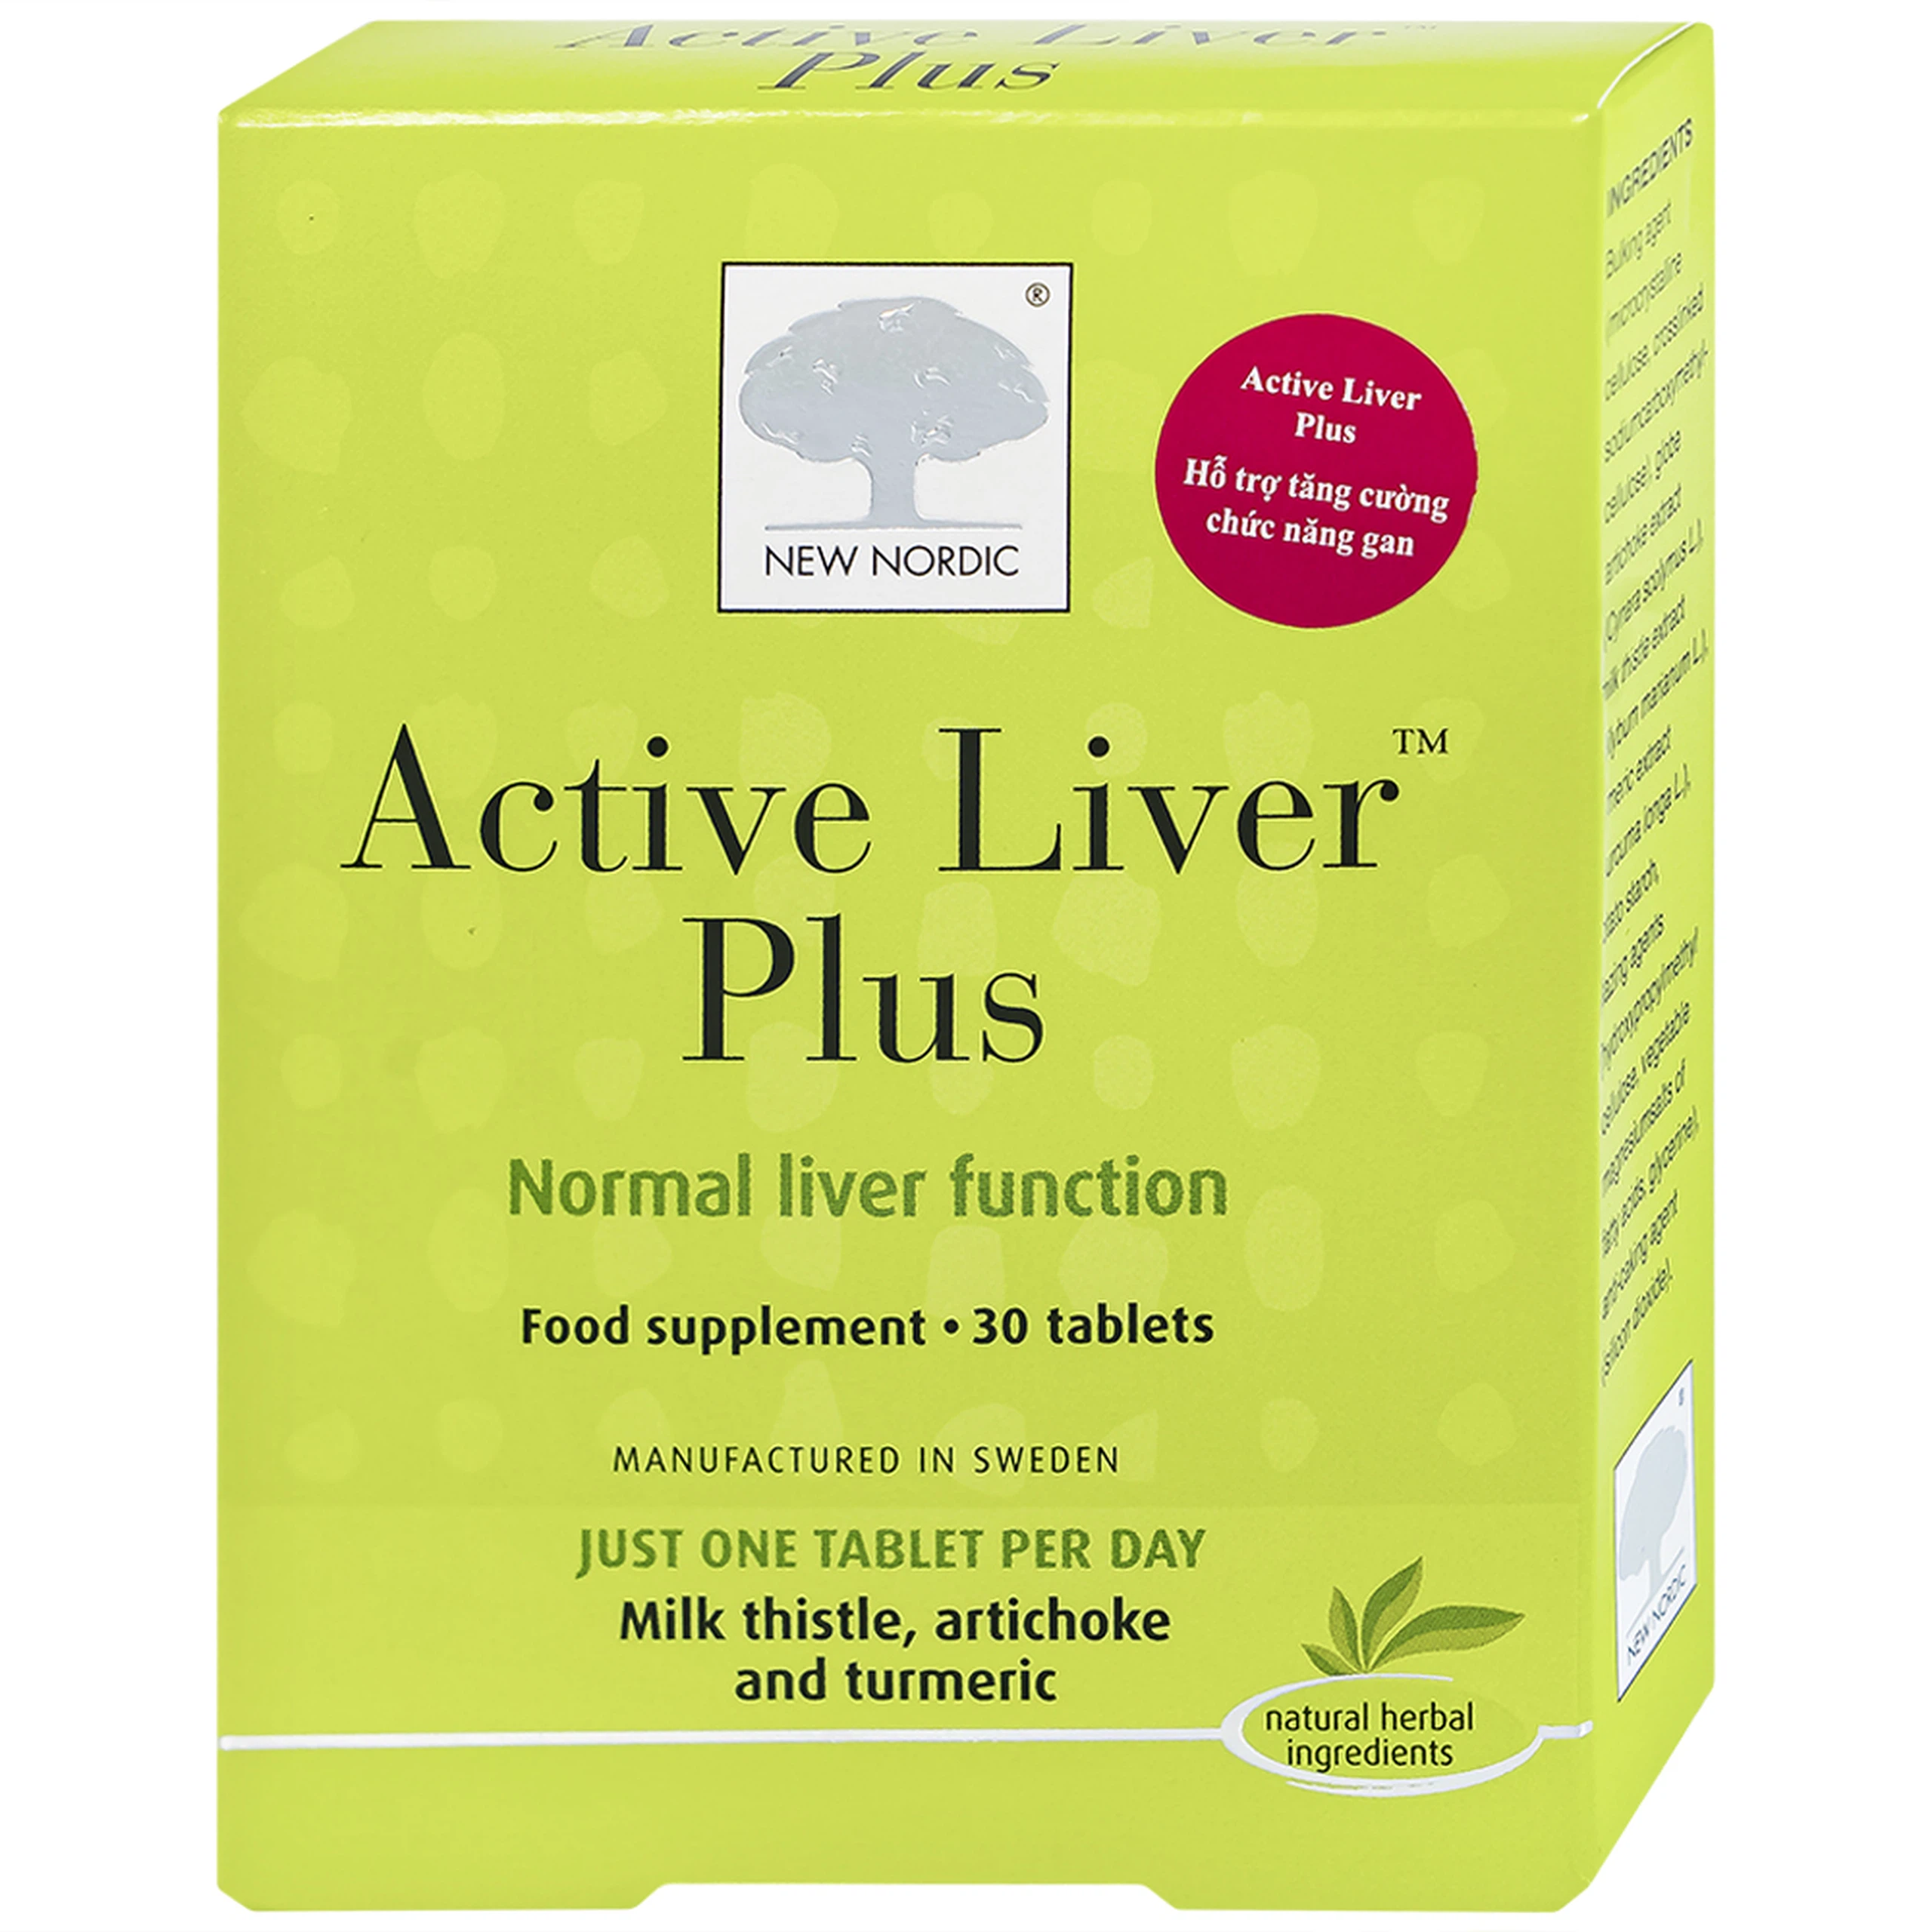 Viên uống Active Liver Plus New Nordic hỗ trợ tăng cường chức năng gan (2 vỉ x 15 viên)